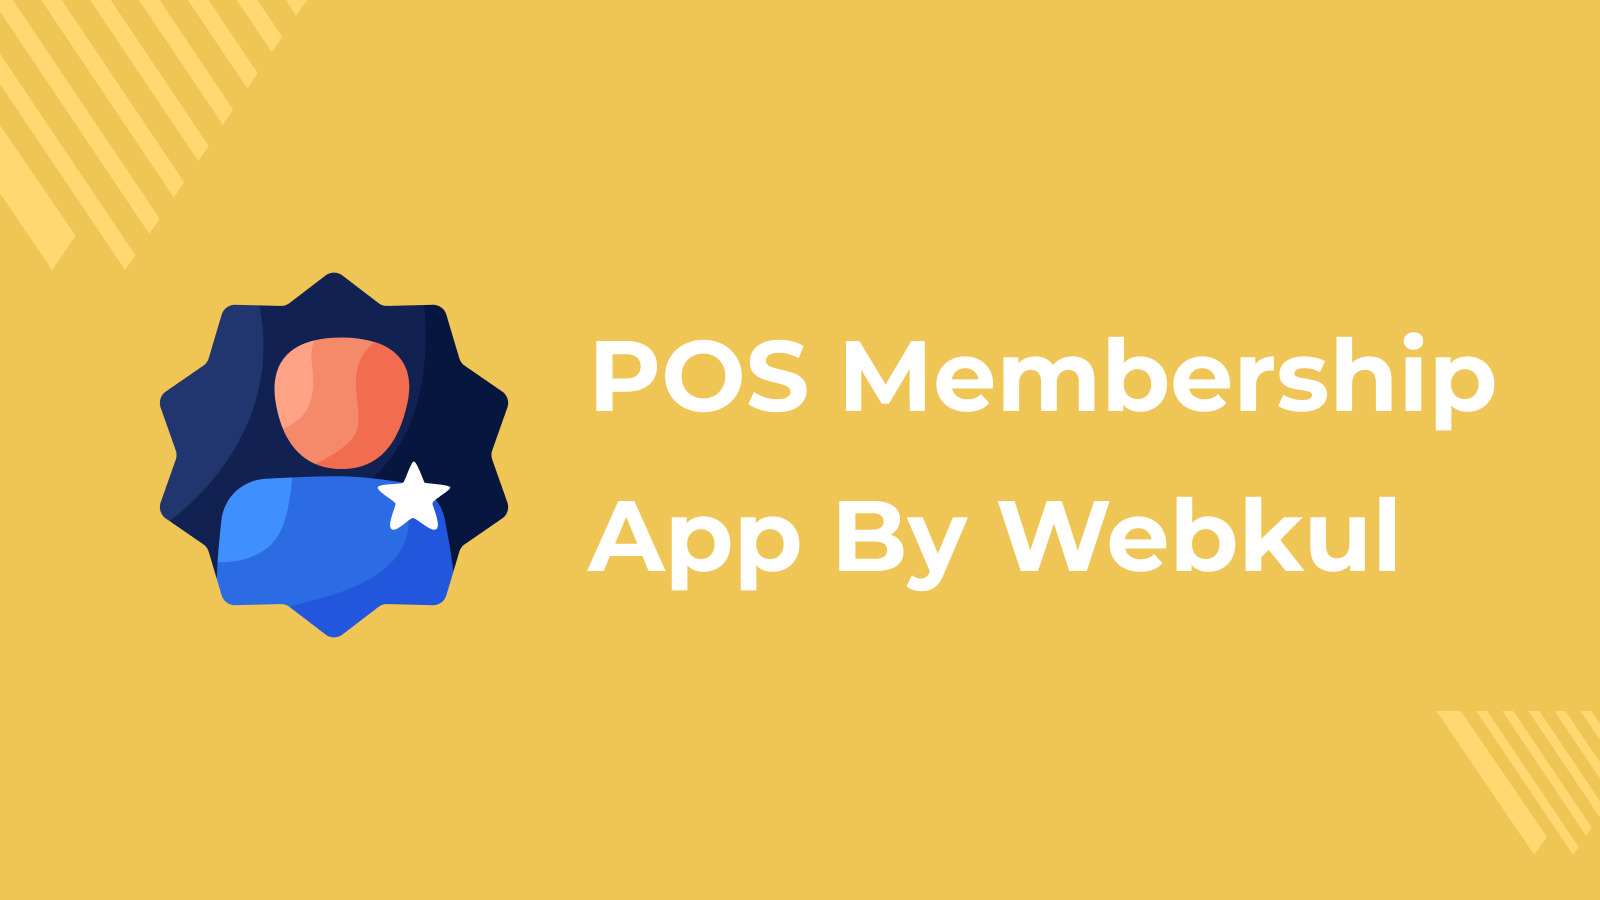 POS Membership app by webkul